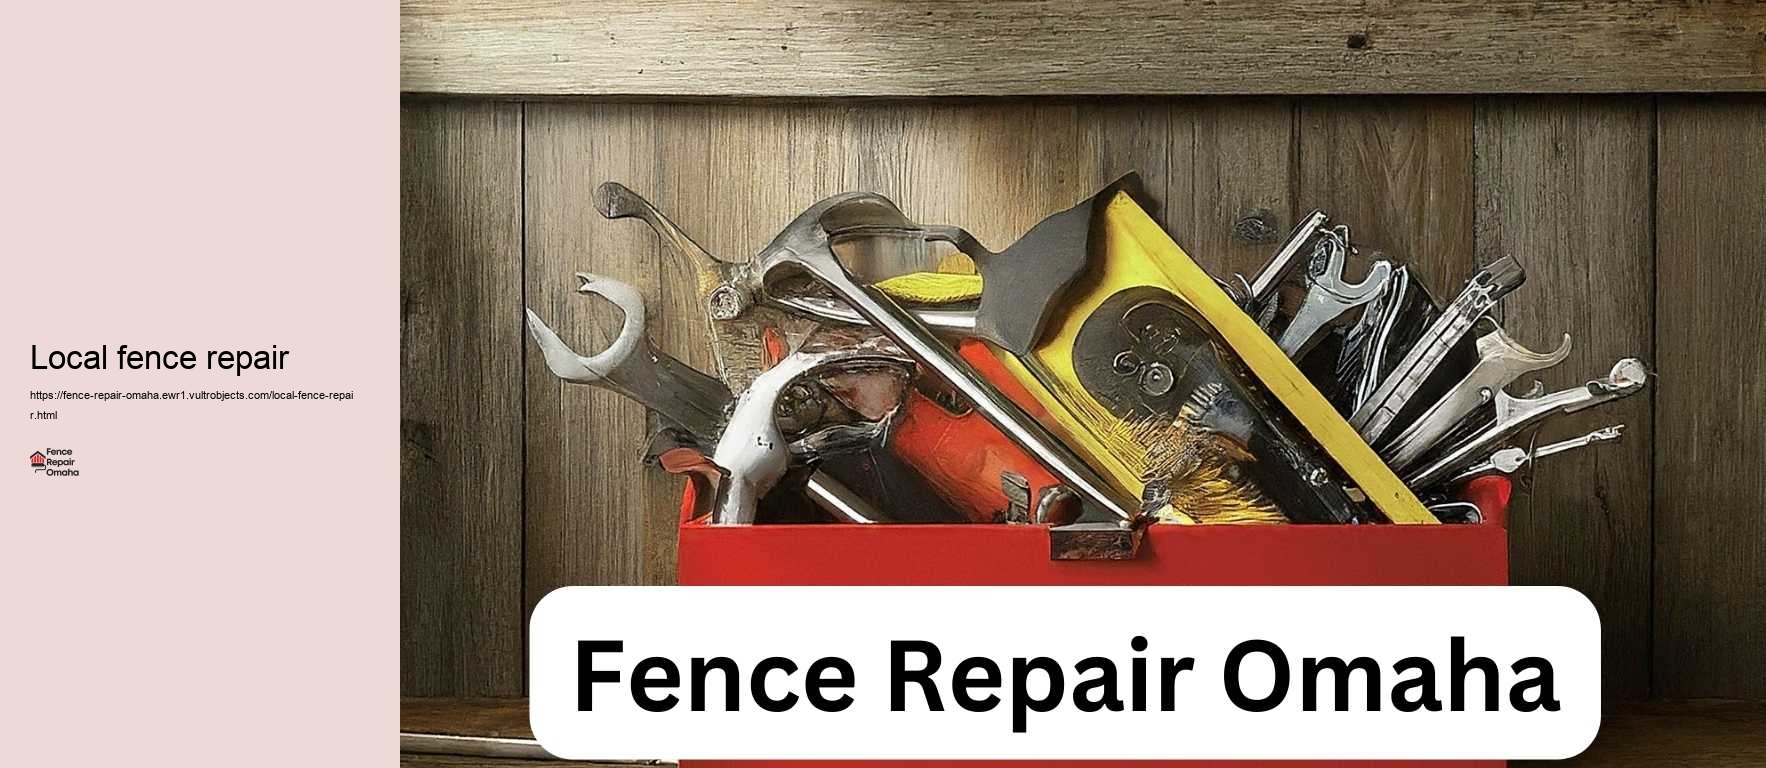 Local fence repair